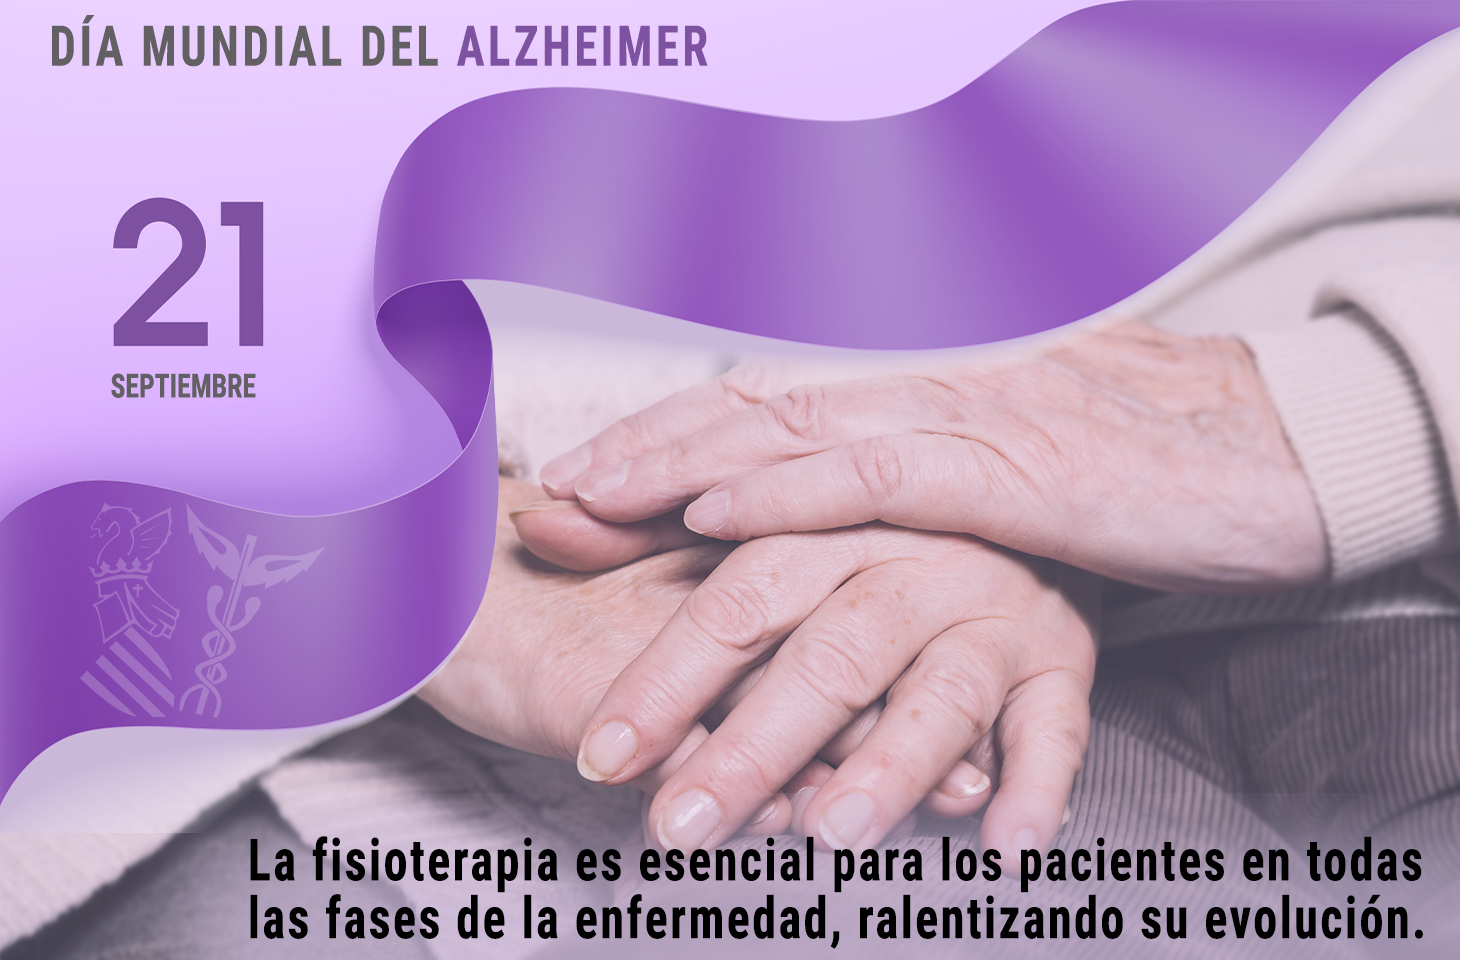 21 de septiembre, Día Mundial del Alzheimer. La Fisioterapia, vital para los pacientes durante todas las fases de la enfermedad - ICOFCV